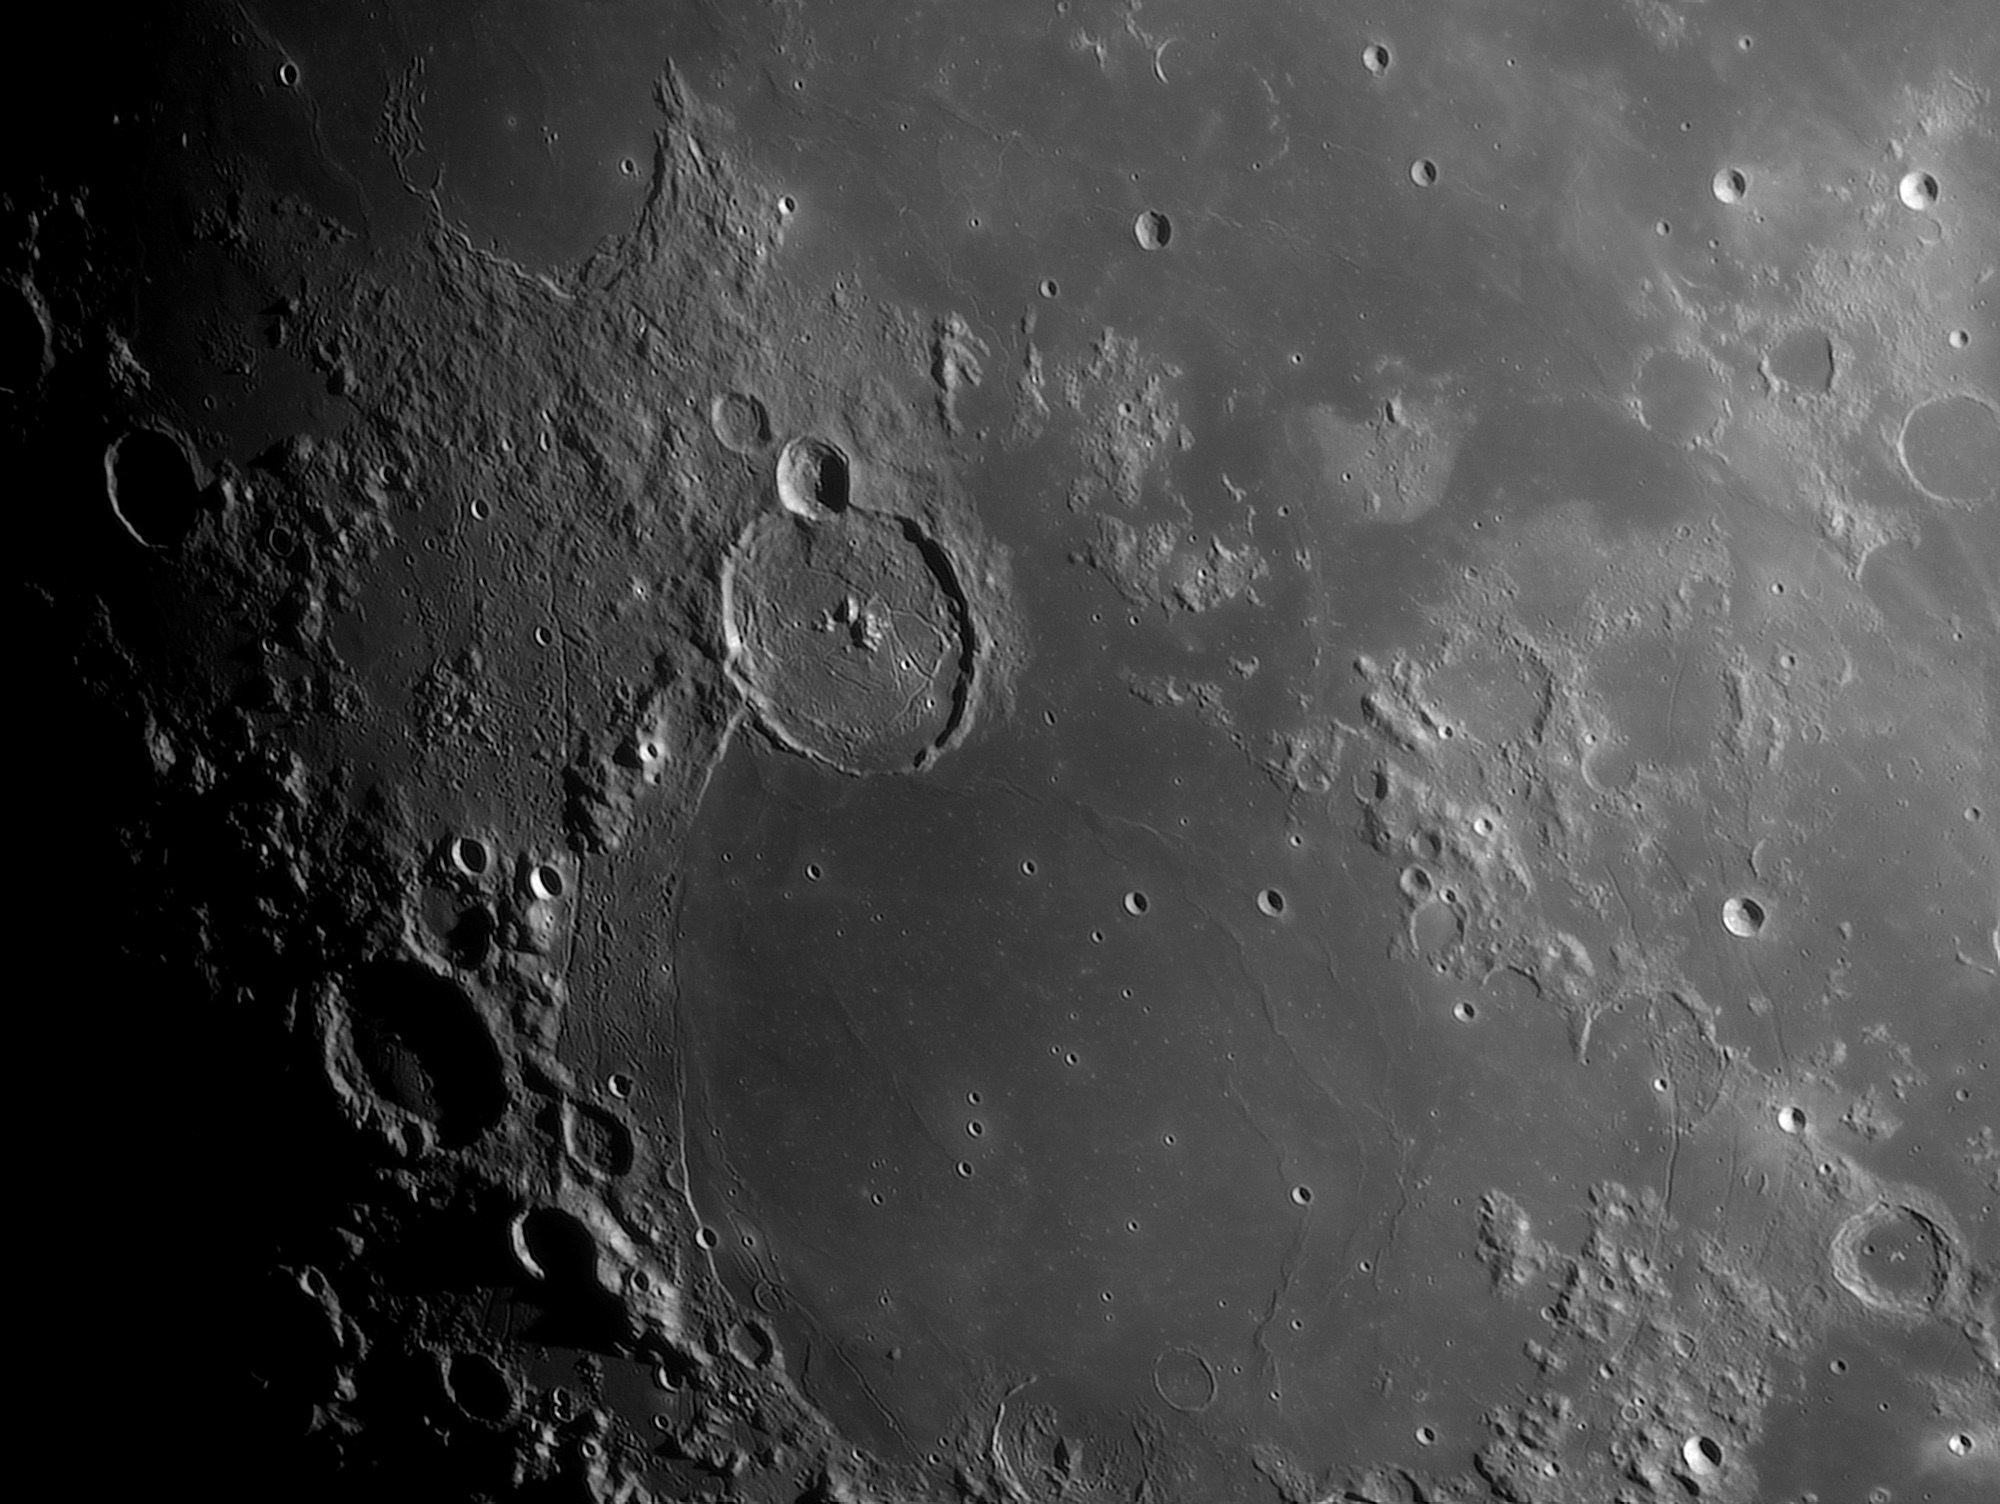 Lune-20210423_Gassendi-baAS.jpg.8e5d9118adaaa9d735fe97dc6ee498d0.jpg